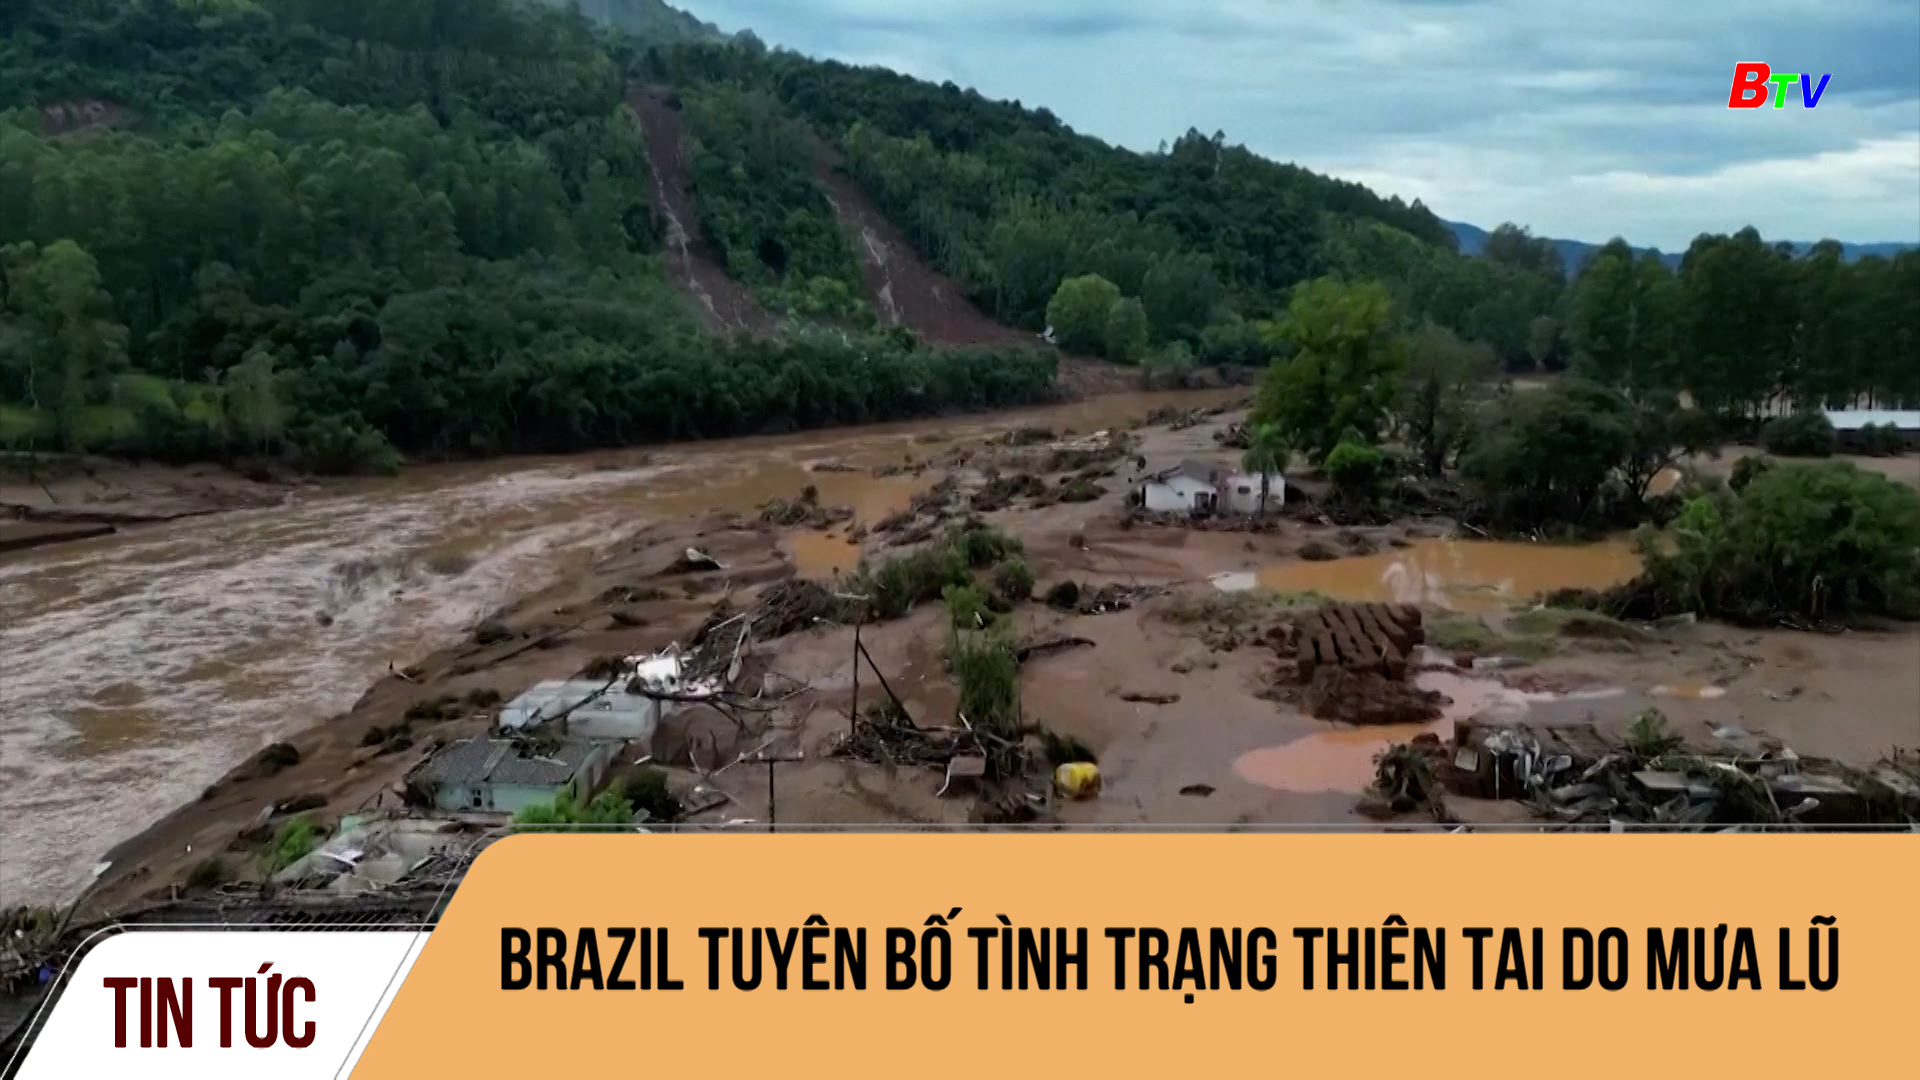 Brazil tuyên bố tình trạng thiên tai do mưa lũ